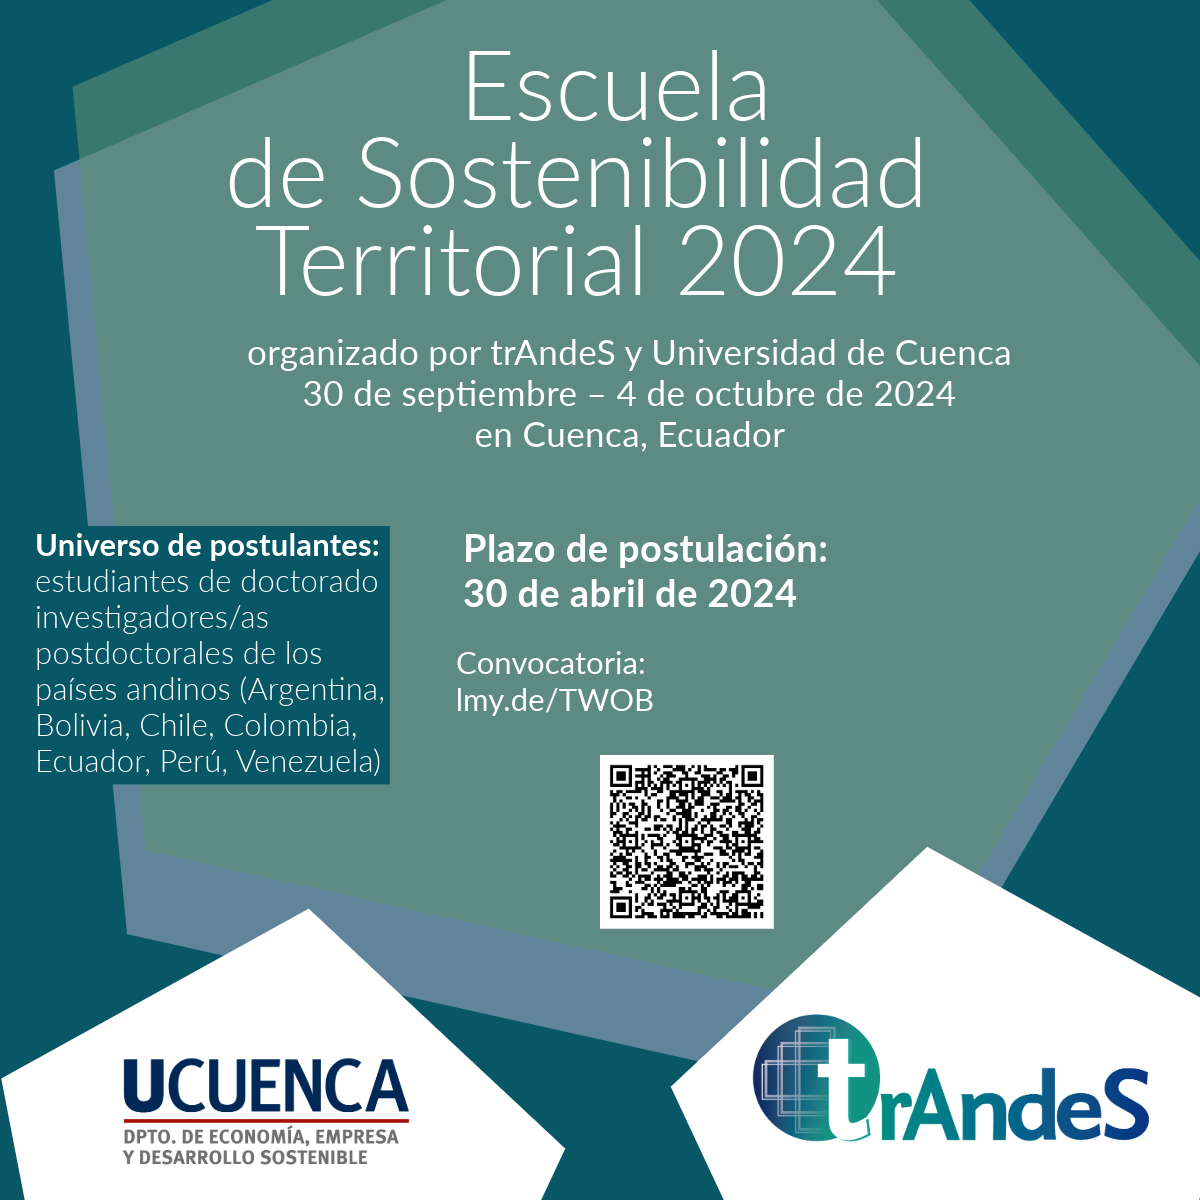 Escuela de Sostenibilidad Territorial 2024